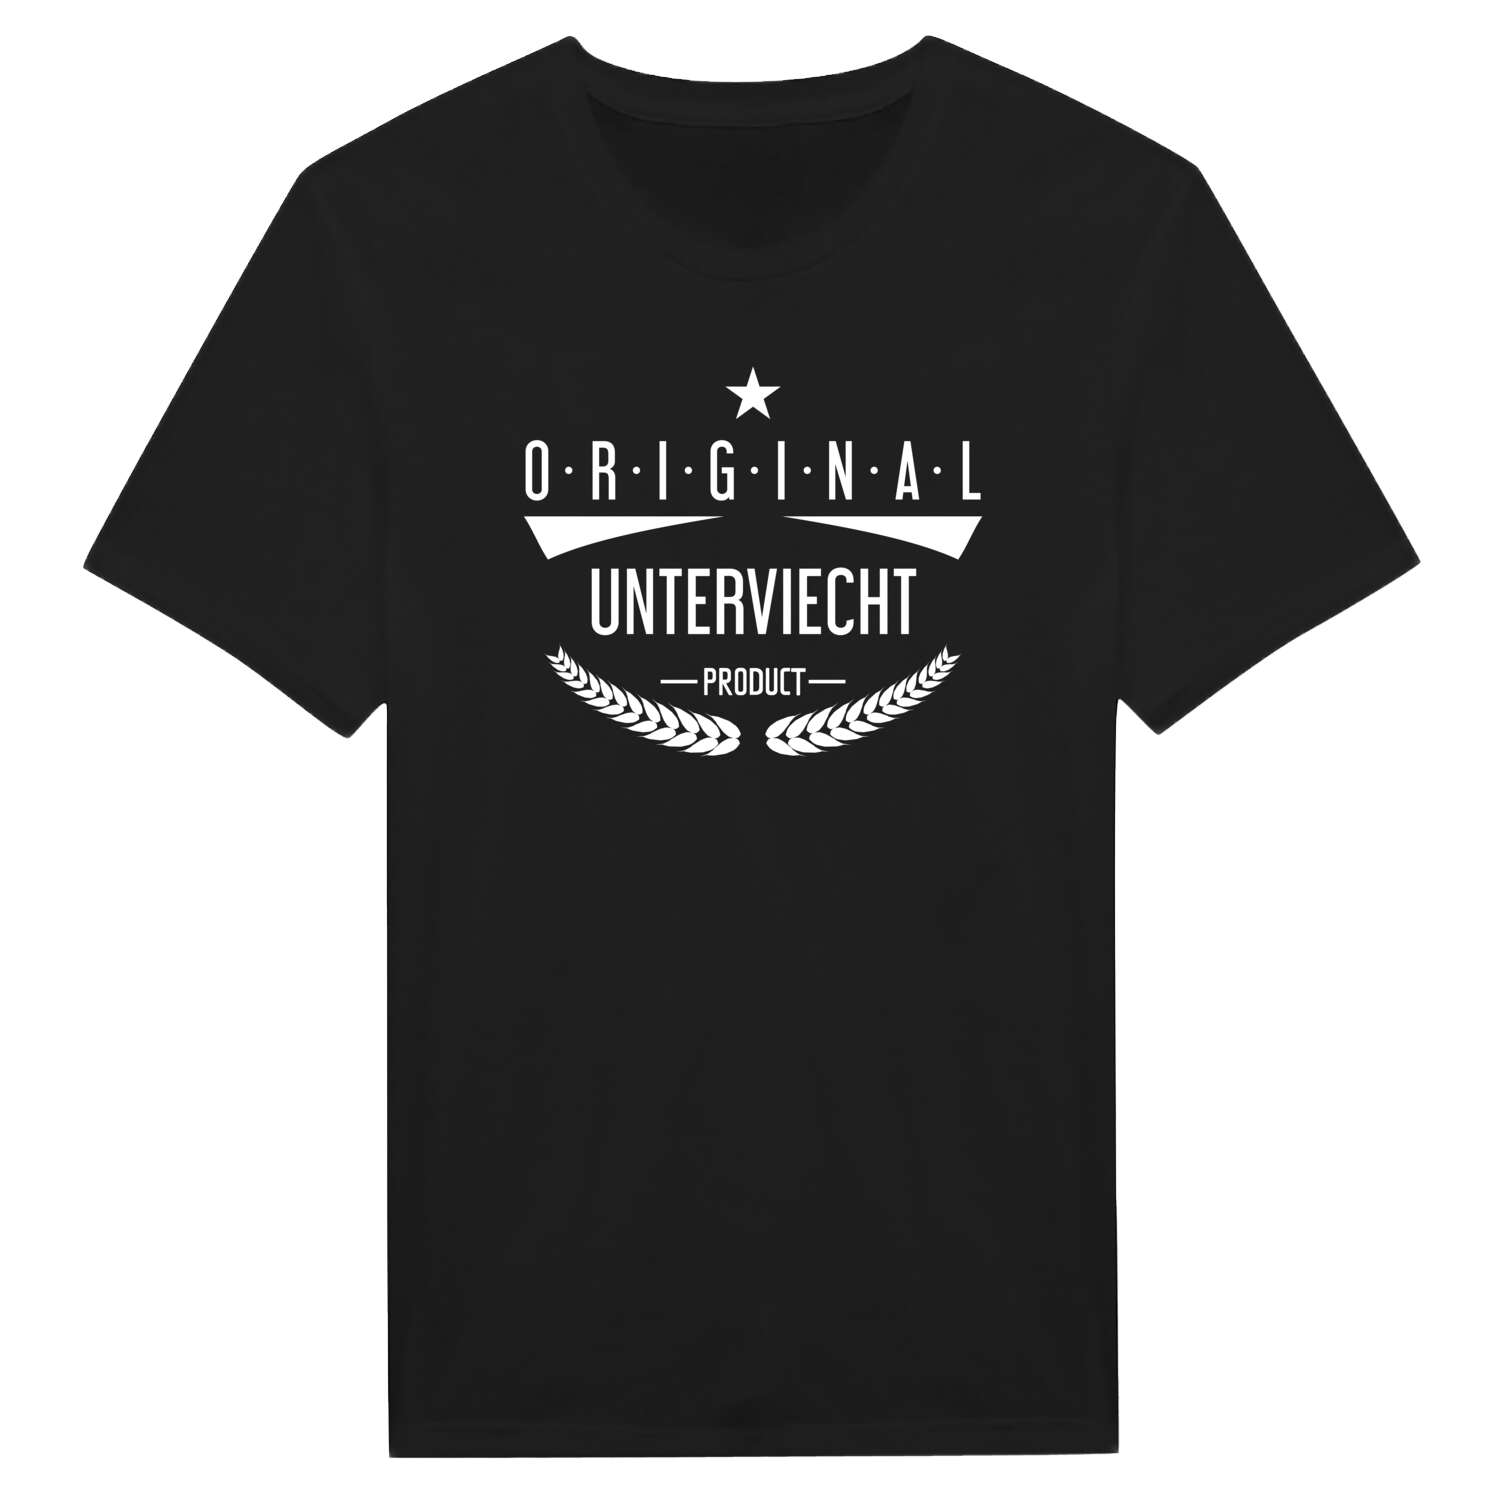 Unterviecht T-Shirt »Original Product«